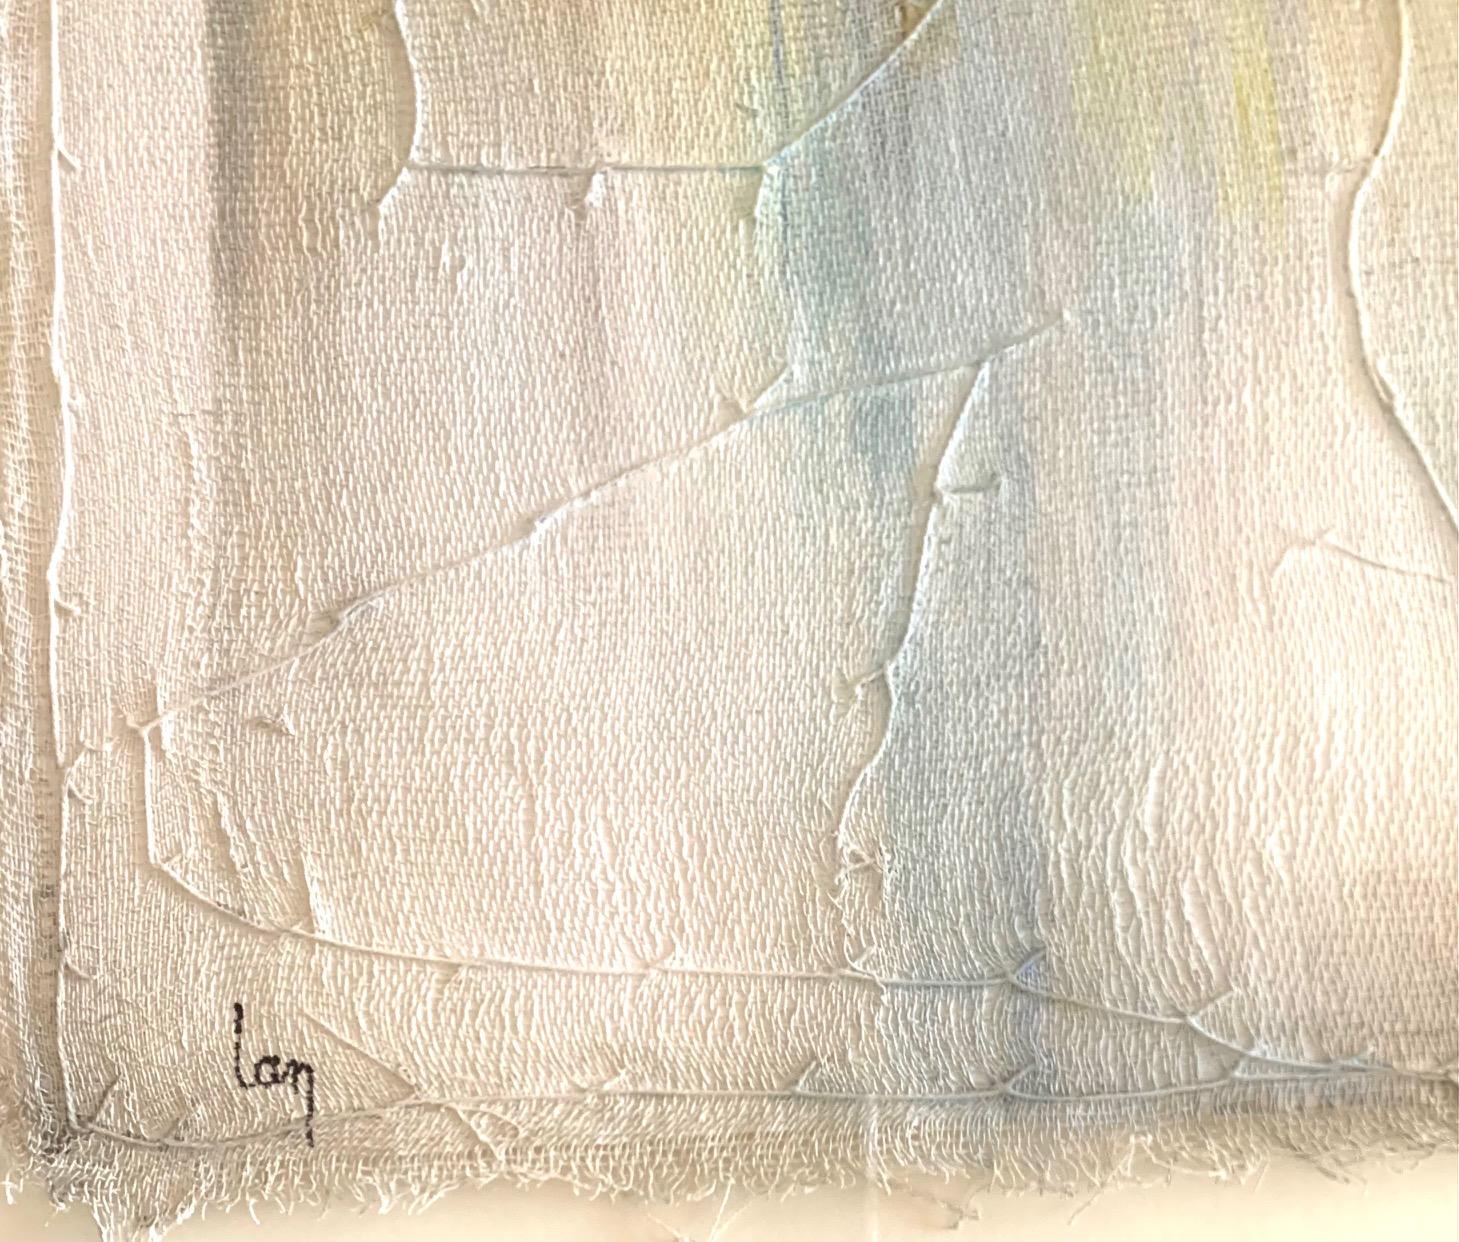 Die zeitgenössische belgische Künstlerin Diane Petry kreiert ihre eigene dreilagige Leinwand aus Pimabaumwolle, Gaze und Feinpapier.
Rohe Kanten und applizierte Fäden sorgen für Struktur und Dimension.
Mehrfarbig.
Alle Kunstwerke können in